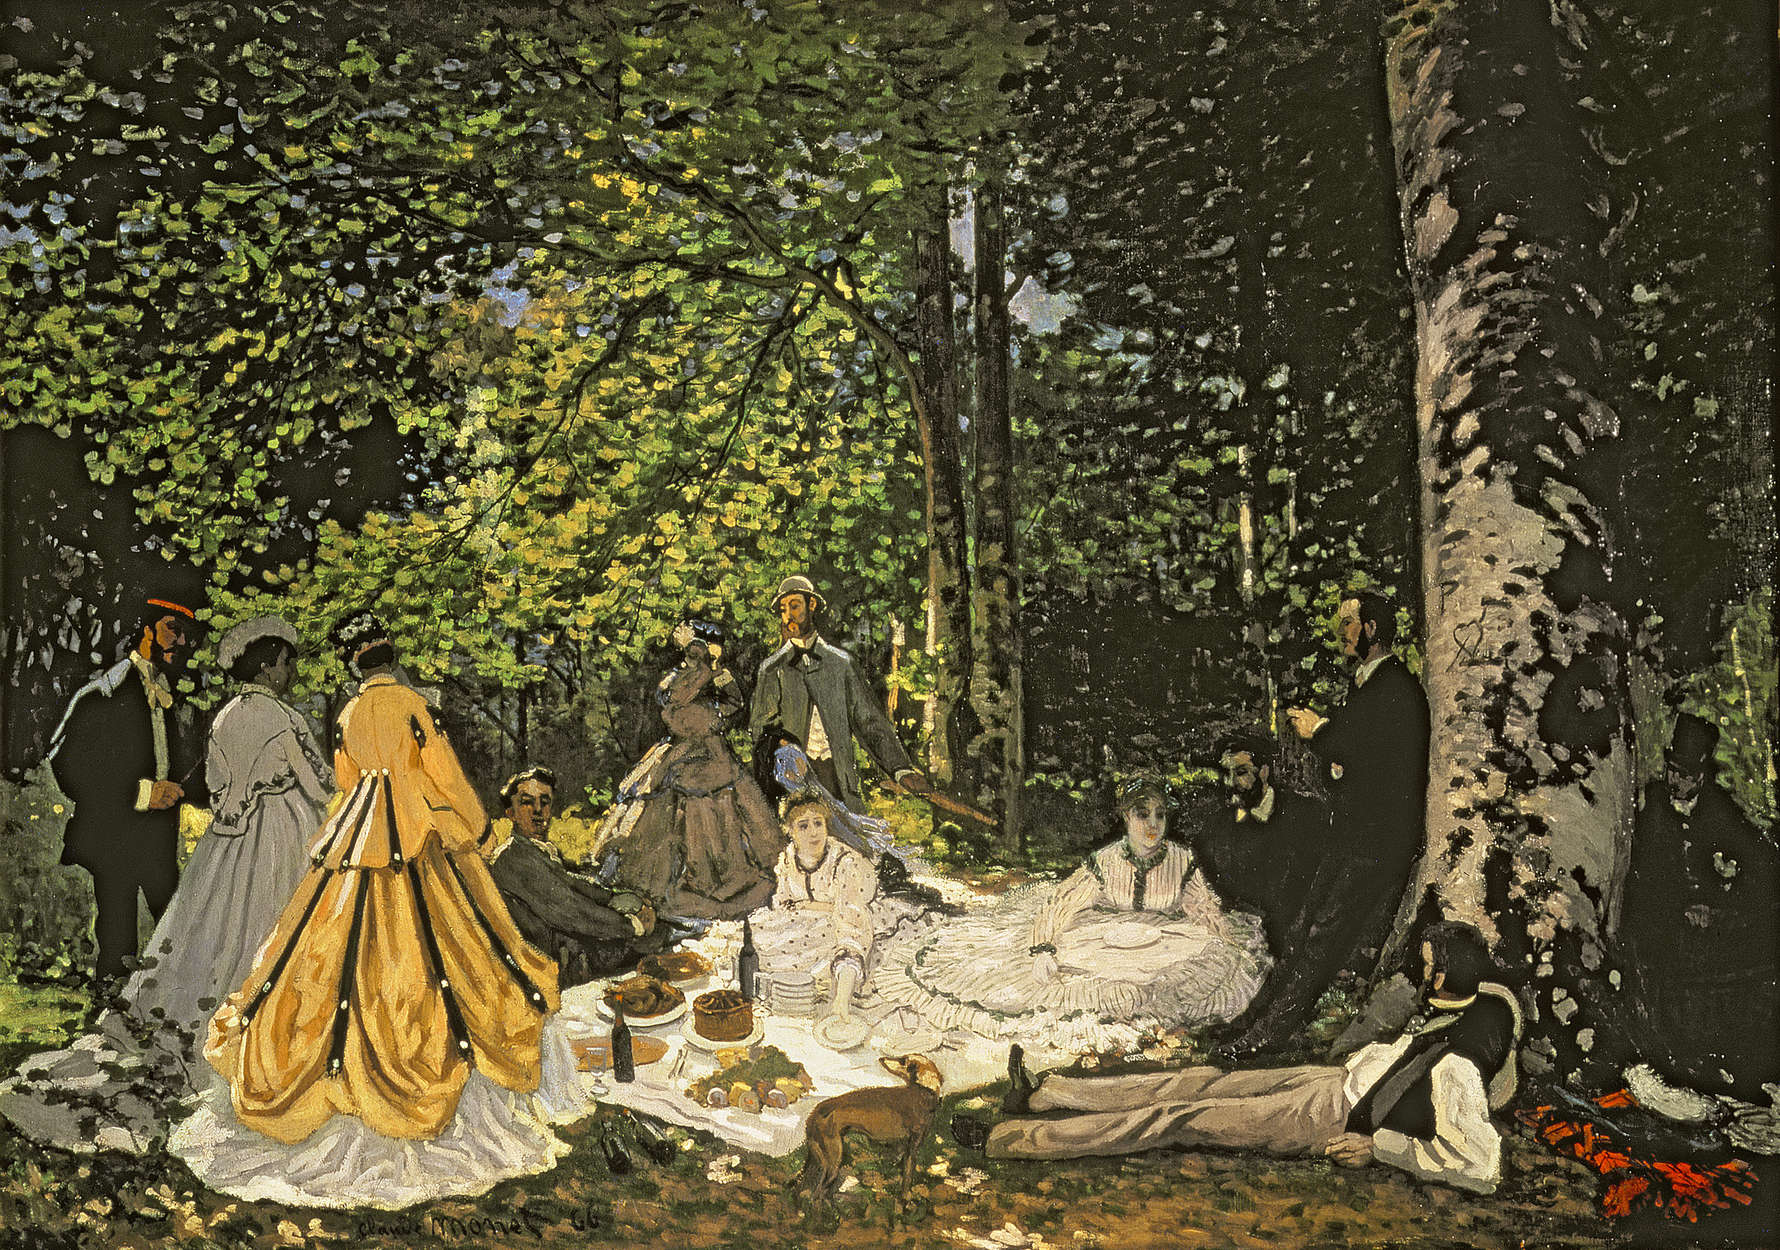             Fototapete "Frühstück im Grünen" von Claude Monet
        